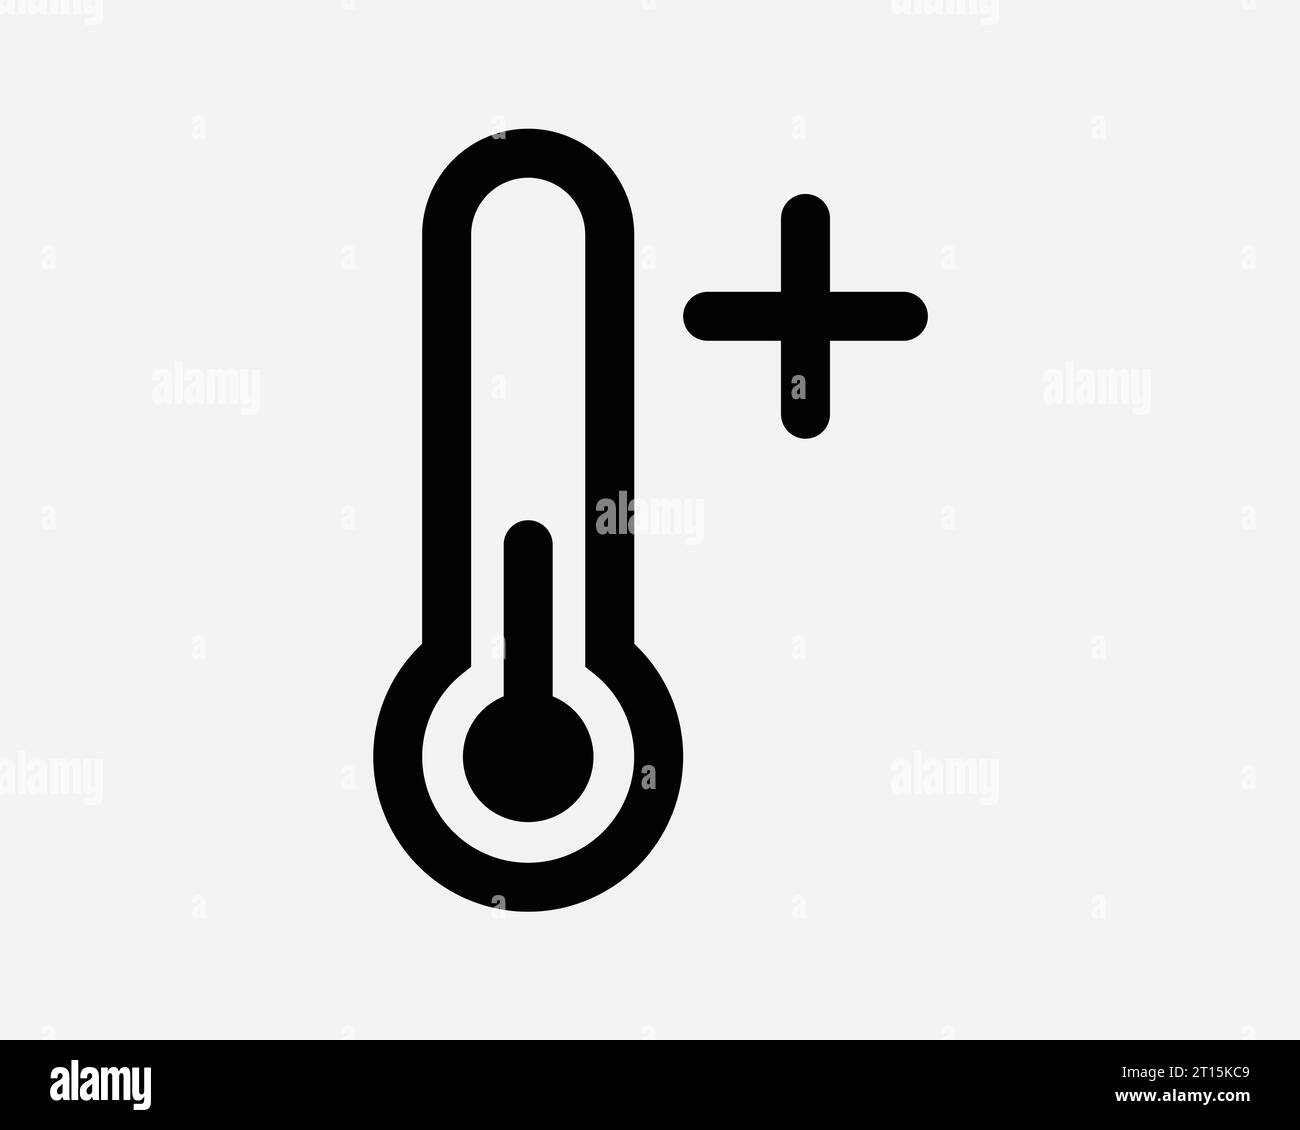 Thermomètre température positive chaud plus plus augmenter augmenter augmenter plus haute ébullition chauffer Noir blanc forme ligne Plan symbole symbole EPS Vector Illustration de Vecteur